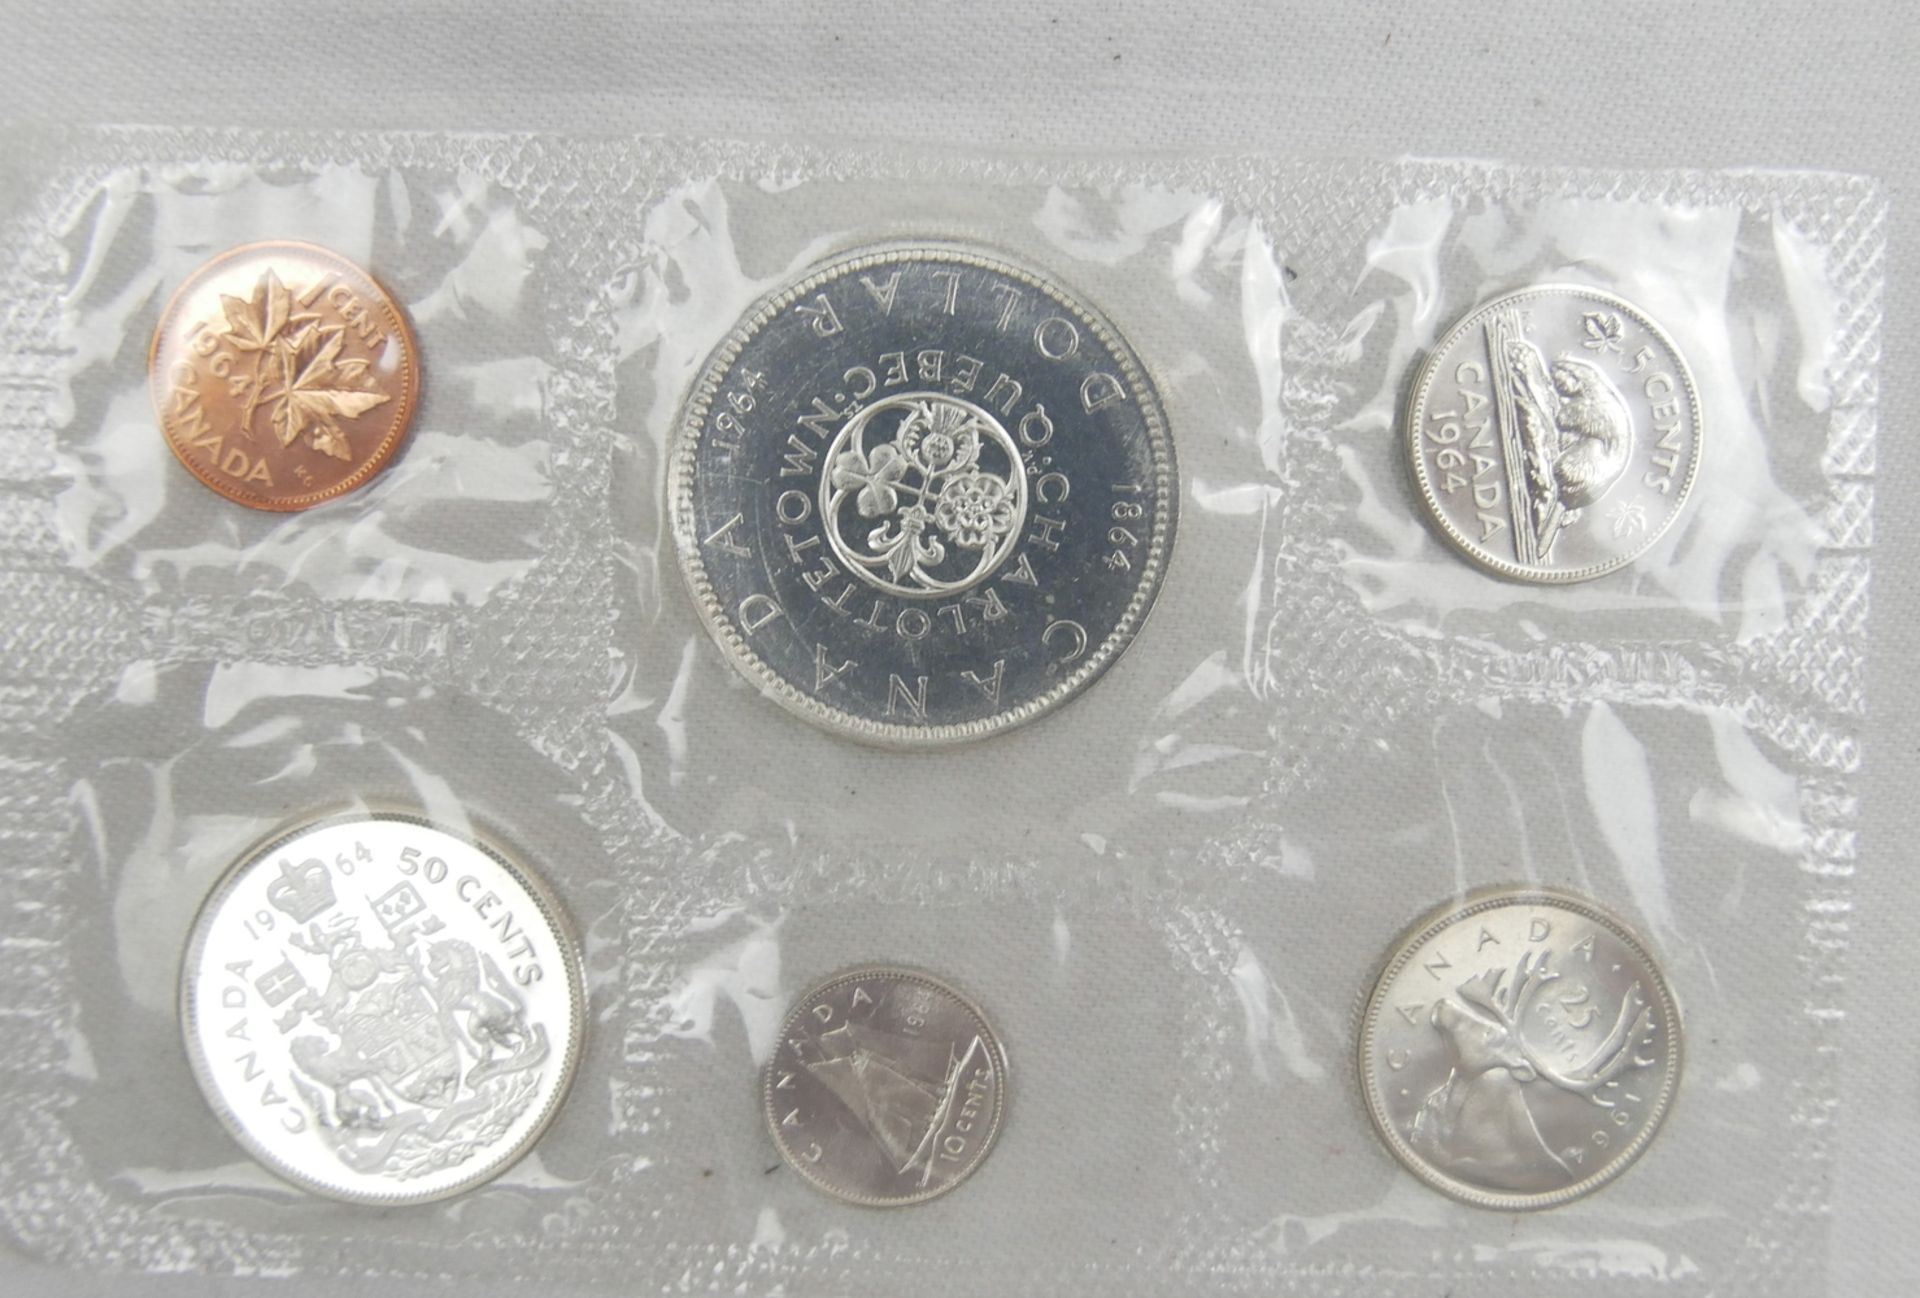 Münzsatz Canada 1964 sowie 1 Canada Dollar Silber 1978 - Bild 3 aus 4